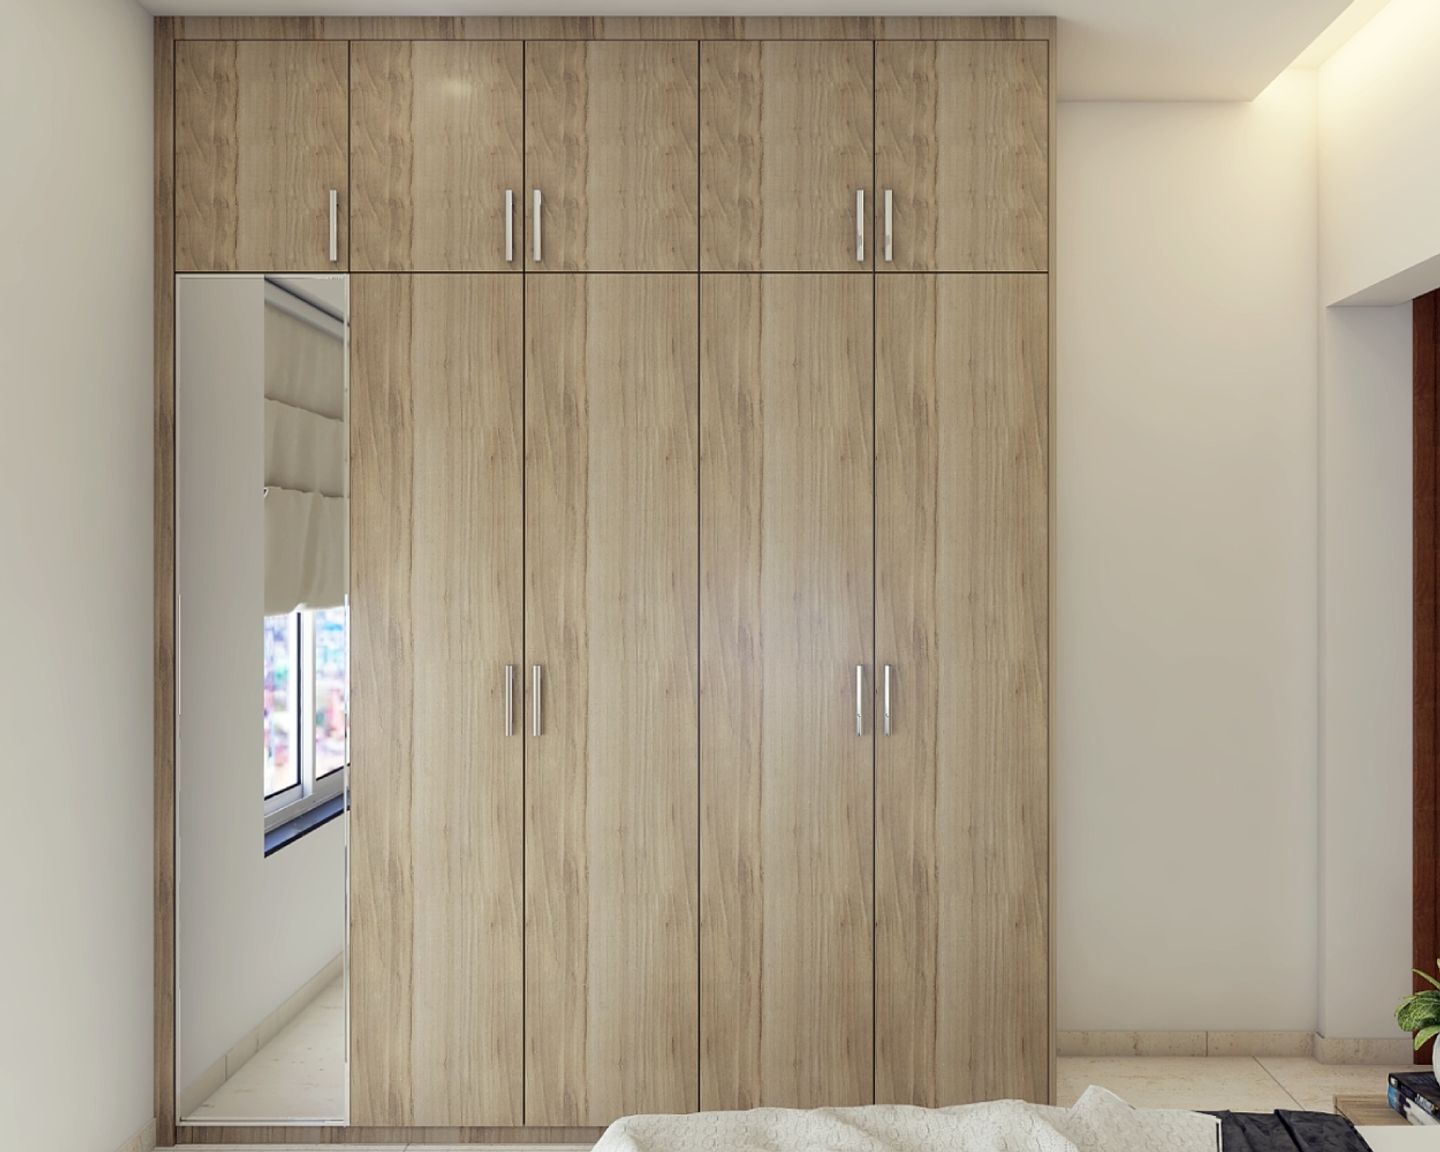 Wooden 4-Door Swing Wardrobe Design With Mirror - Livspace